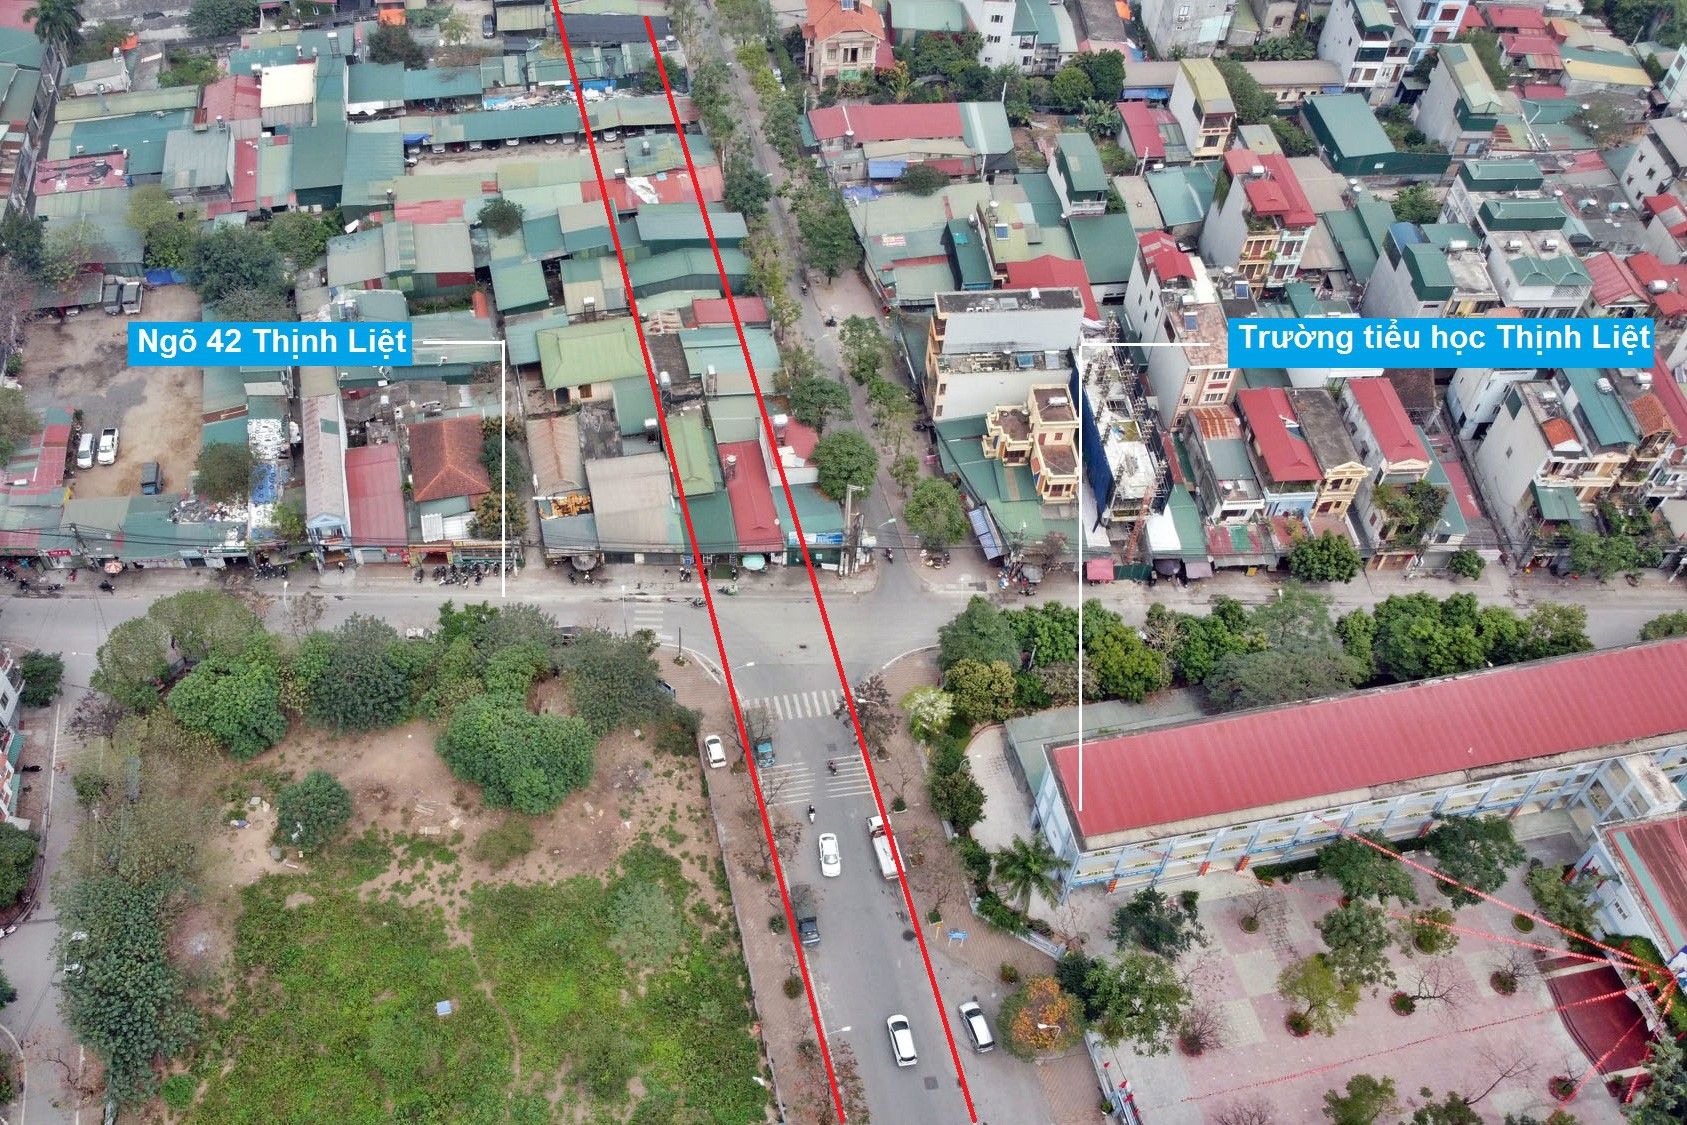 Giá bán nhà riêng 2PN tại phường Thịnh Liệt, quận Hoàng Mai đang bán bao nhiêu?